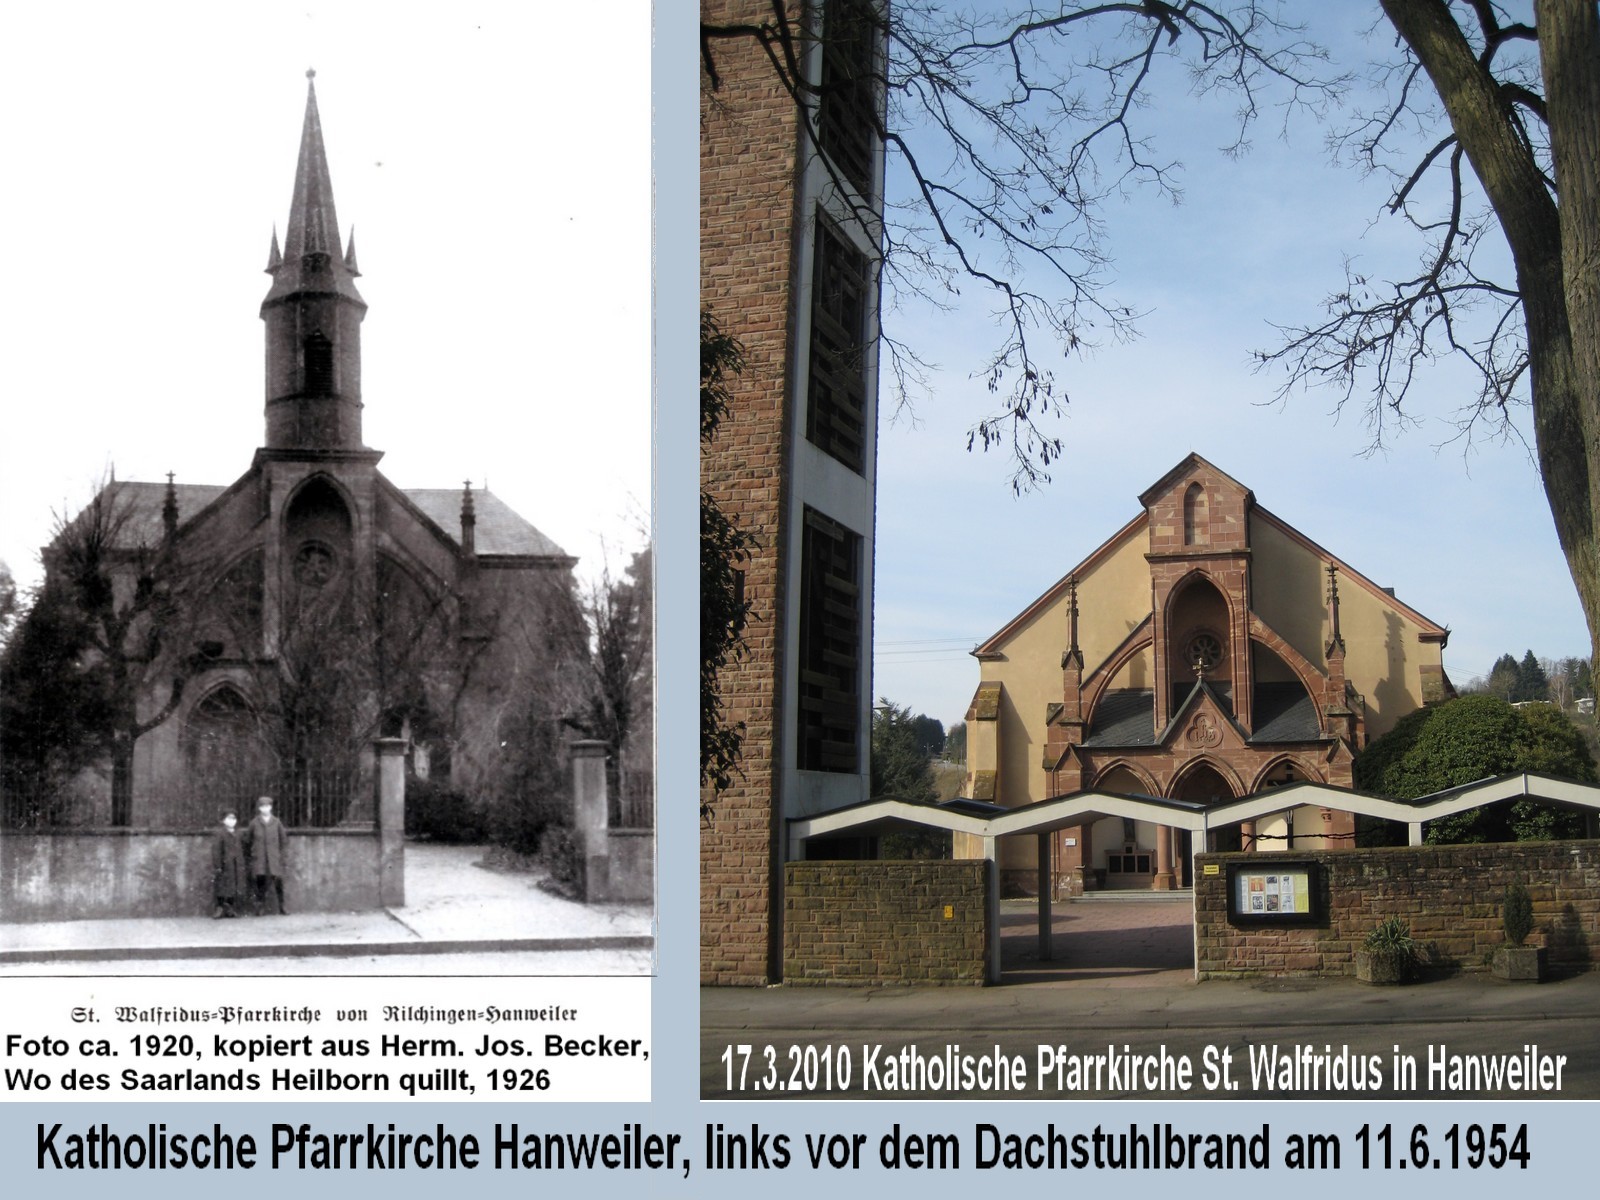 Katholische Pfarrkirche St.Walfridus in Hanweiler, ca. 1920 und 17.3.2010